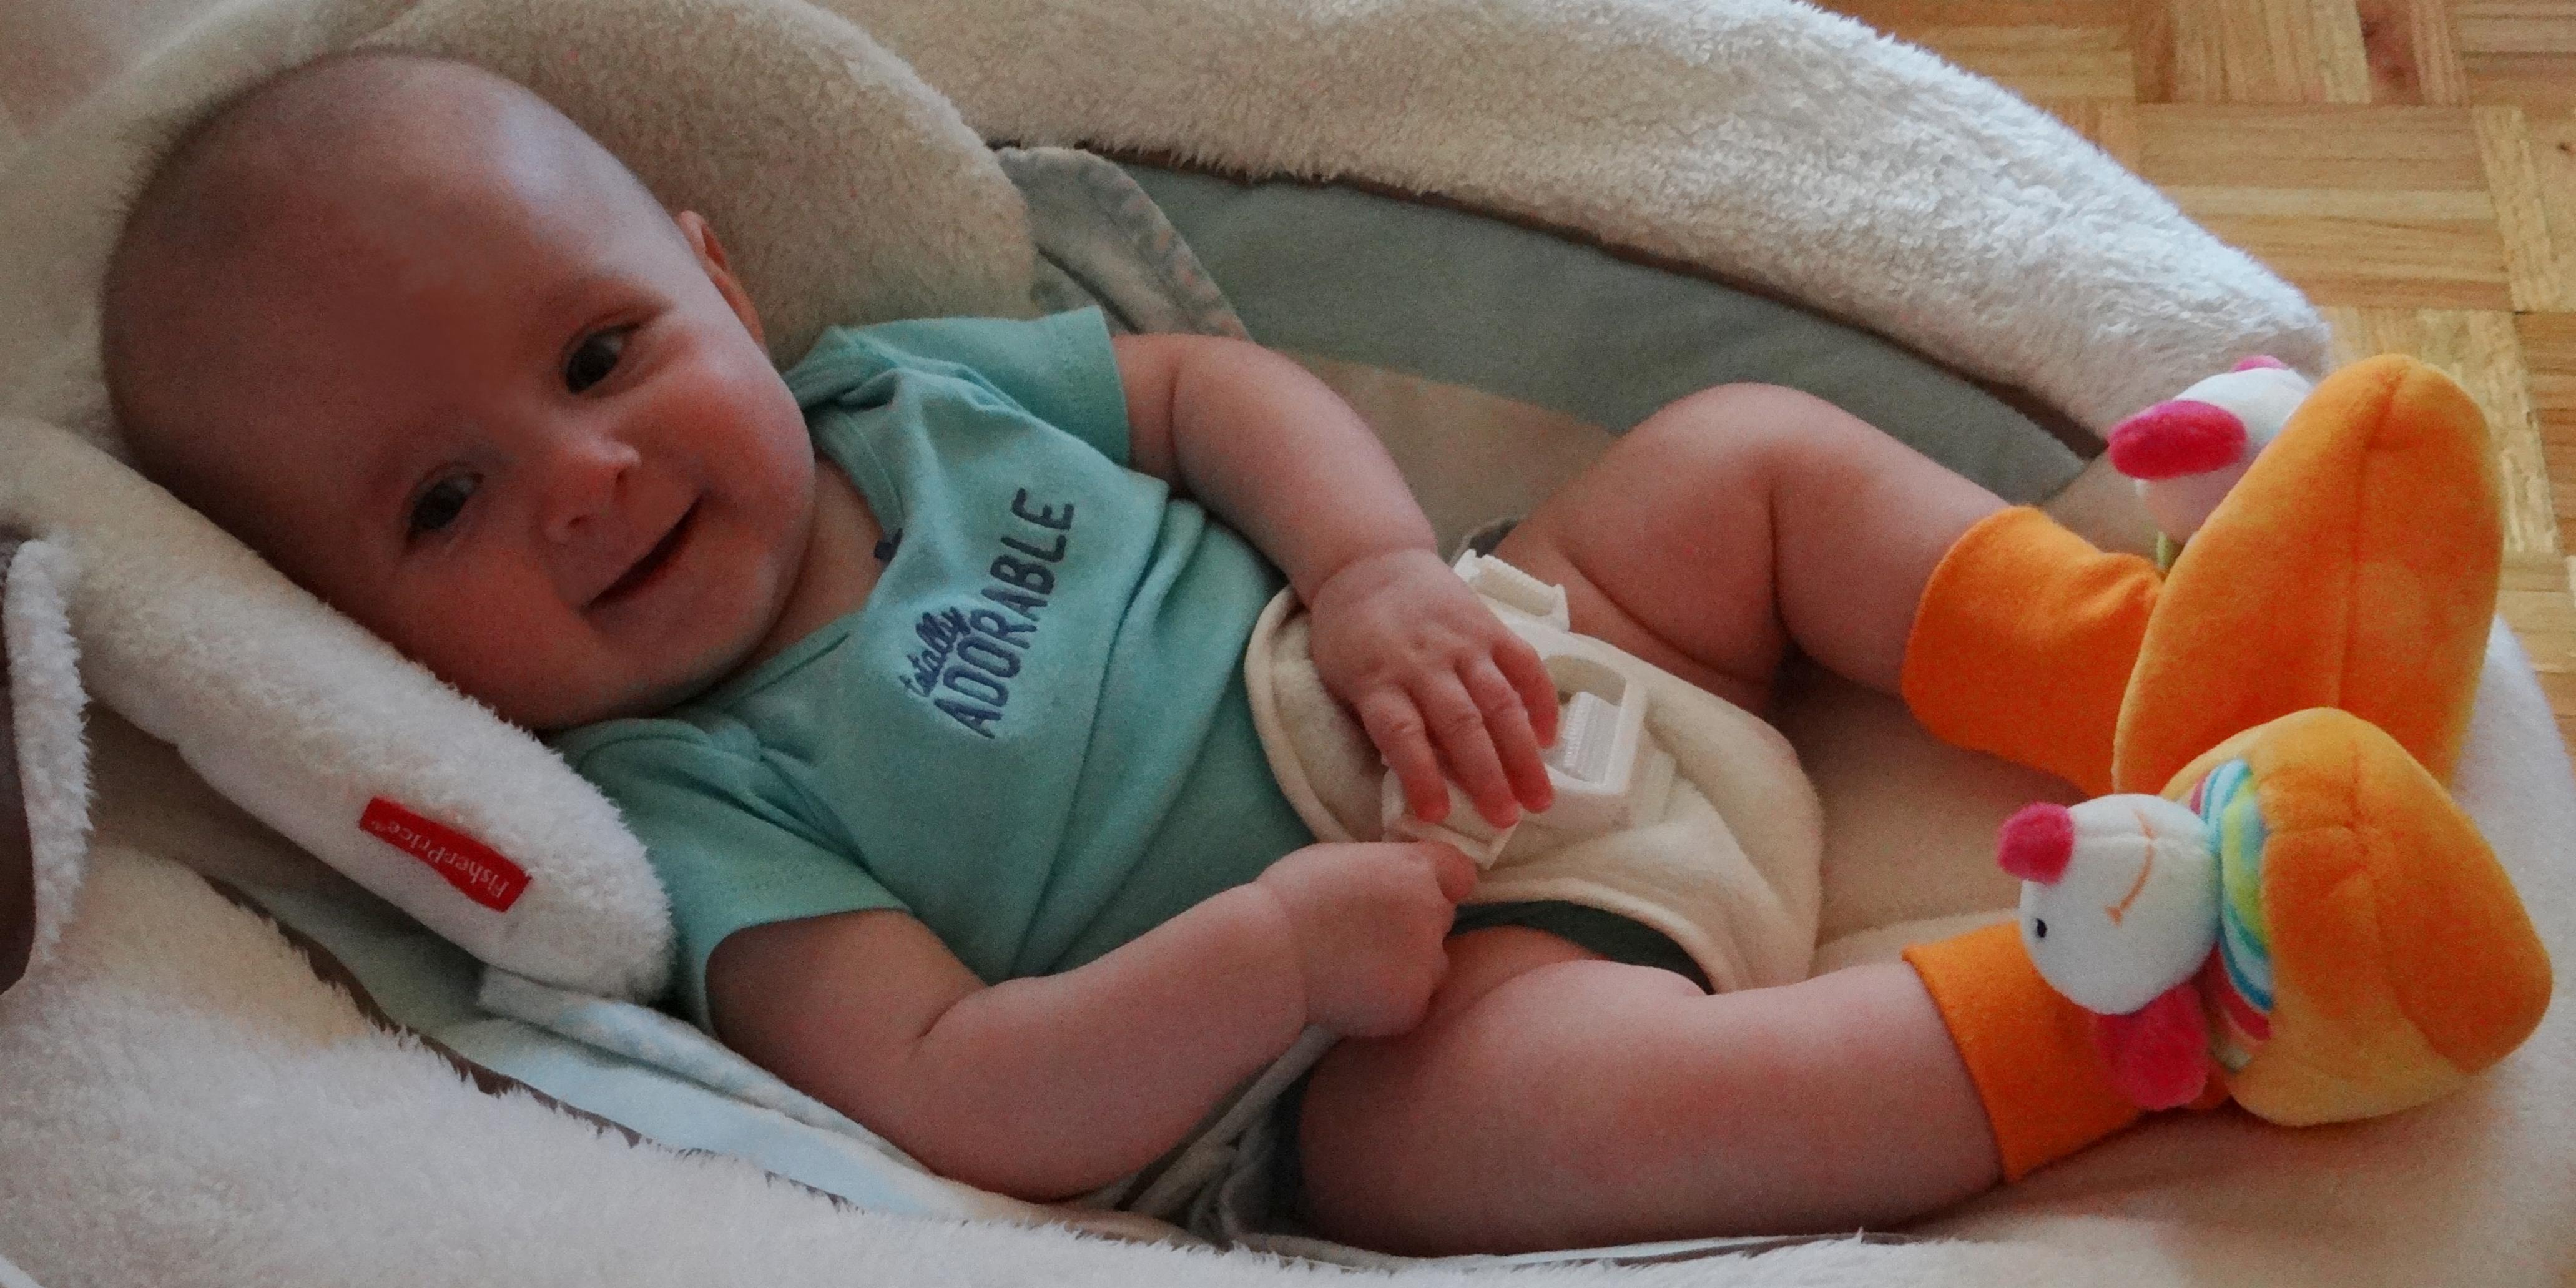 Baby wearing Baby Fehn rattle booties.